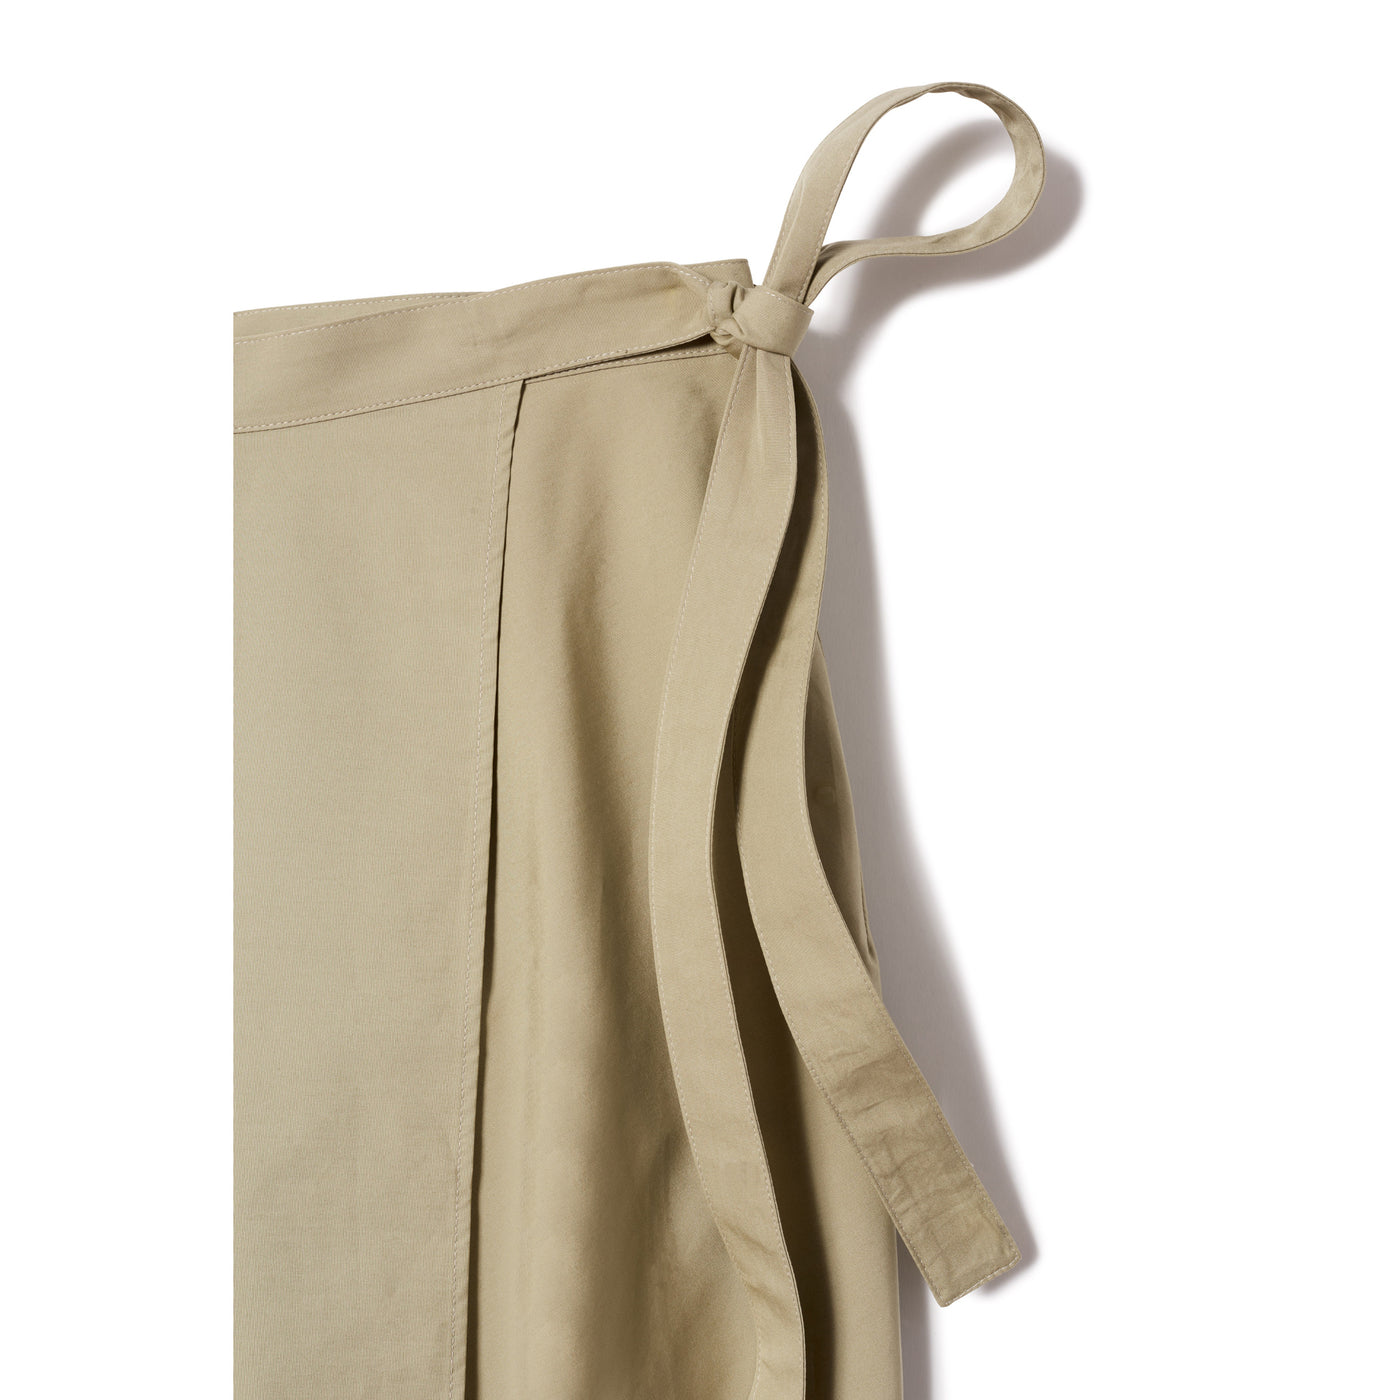 Women's Military One Pocket Skirt - Beige Tan